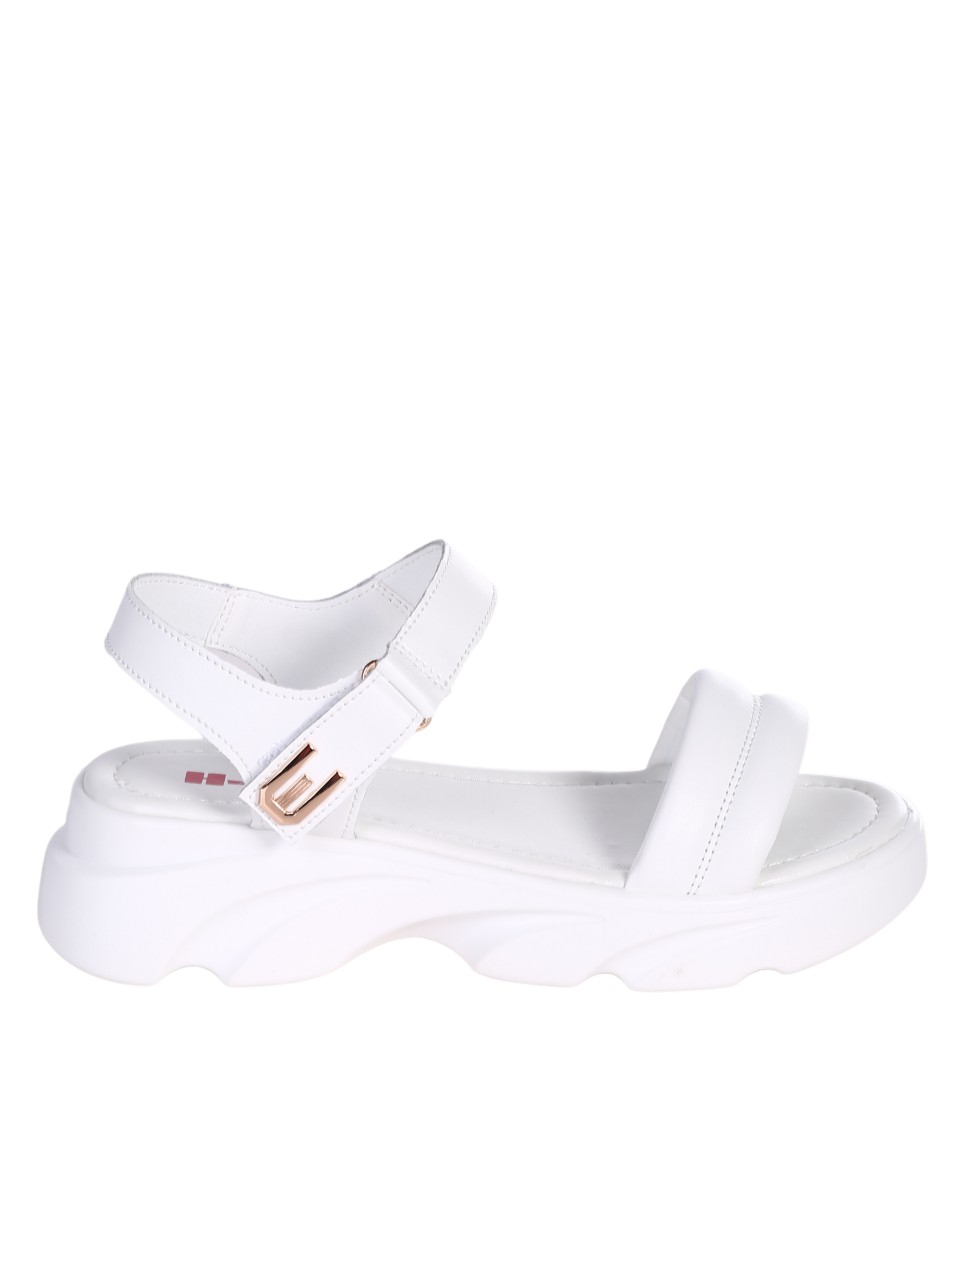 Ежедневни дамски сандал от естествена кожа в бяло 4AF-24061 white